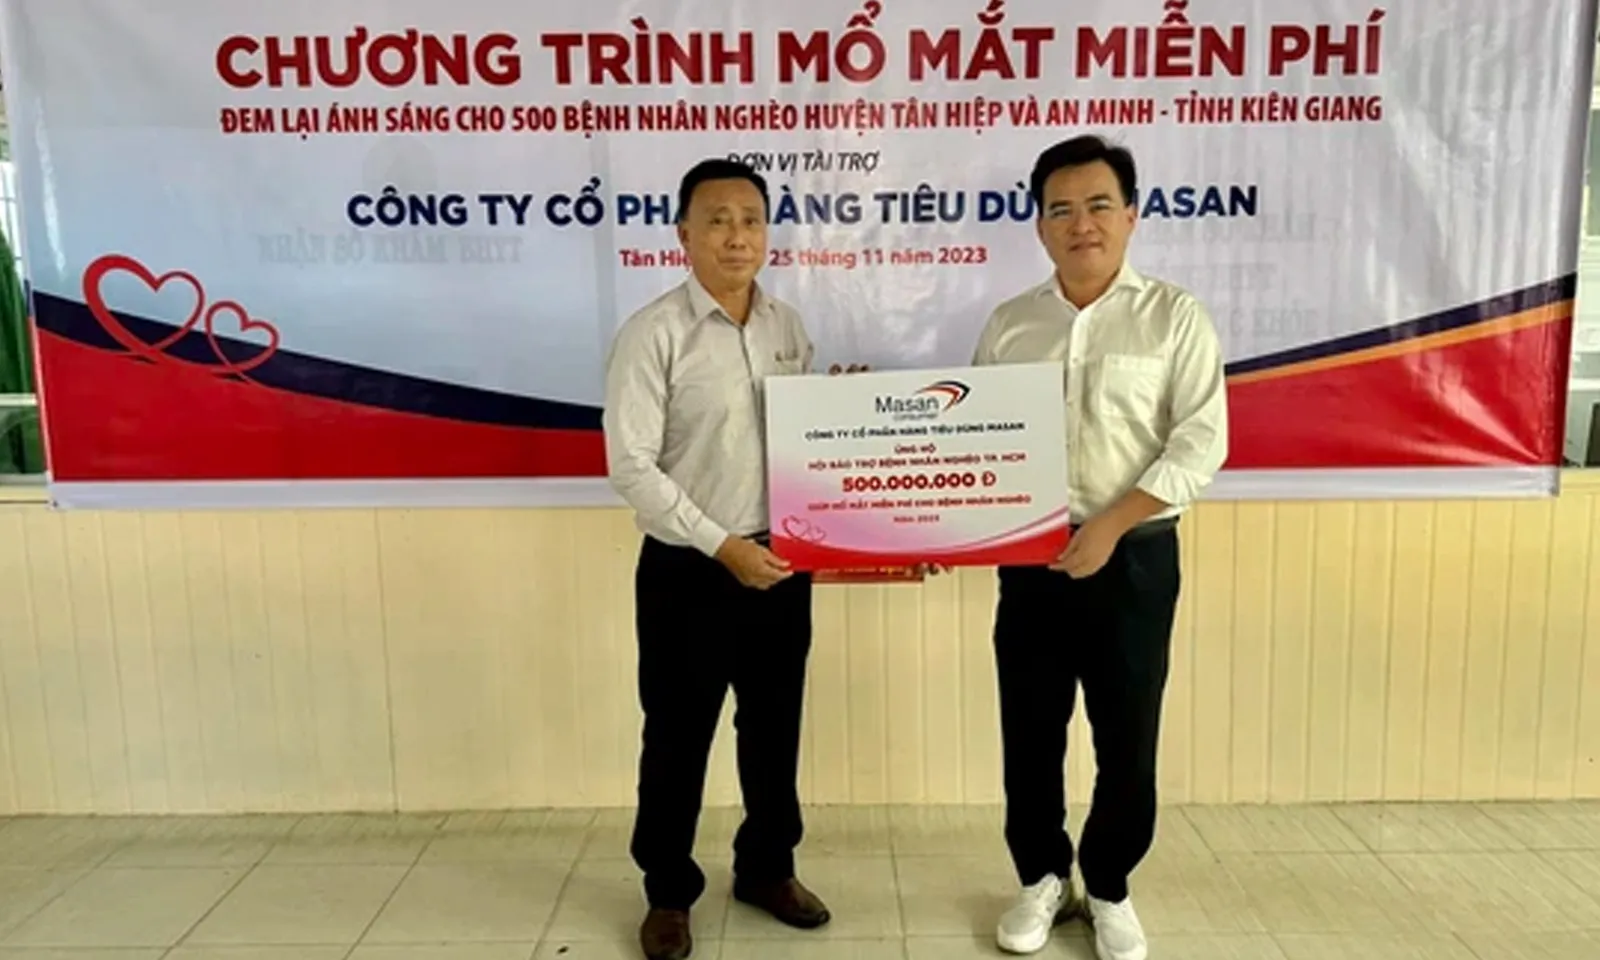 Phẫu thuật mắt miễn phí cho 500 bệnh nhân nghèo ở Kiên Giang